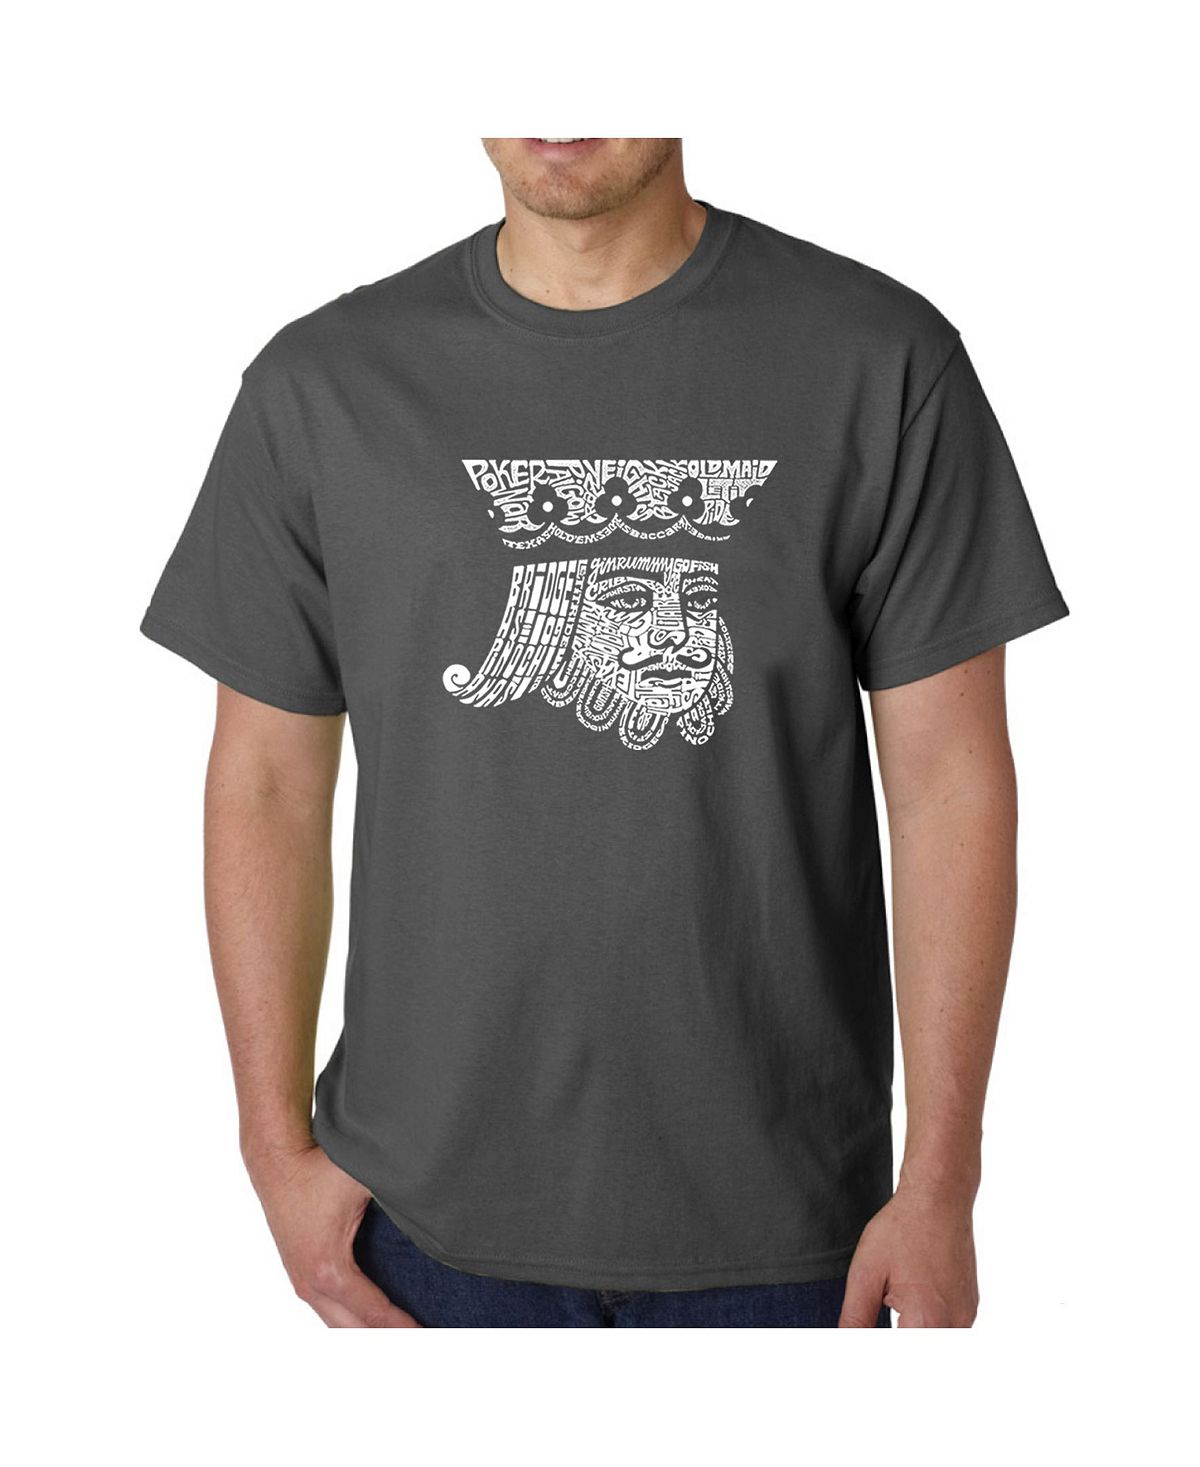 Мужская футболка с рисунком Word Art — Пиковый король LA Pop Art мужская футболка премиум класса word art пиковый король la pop art красный